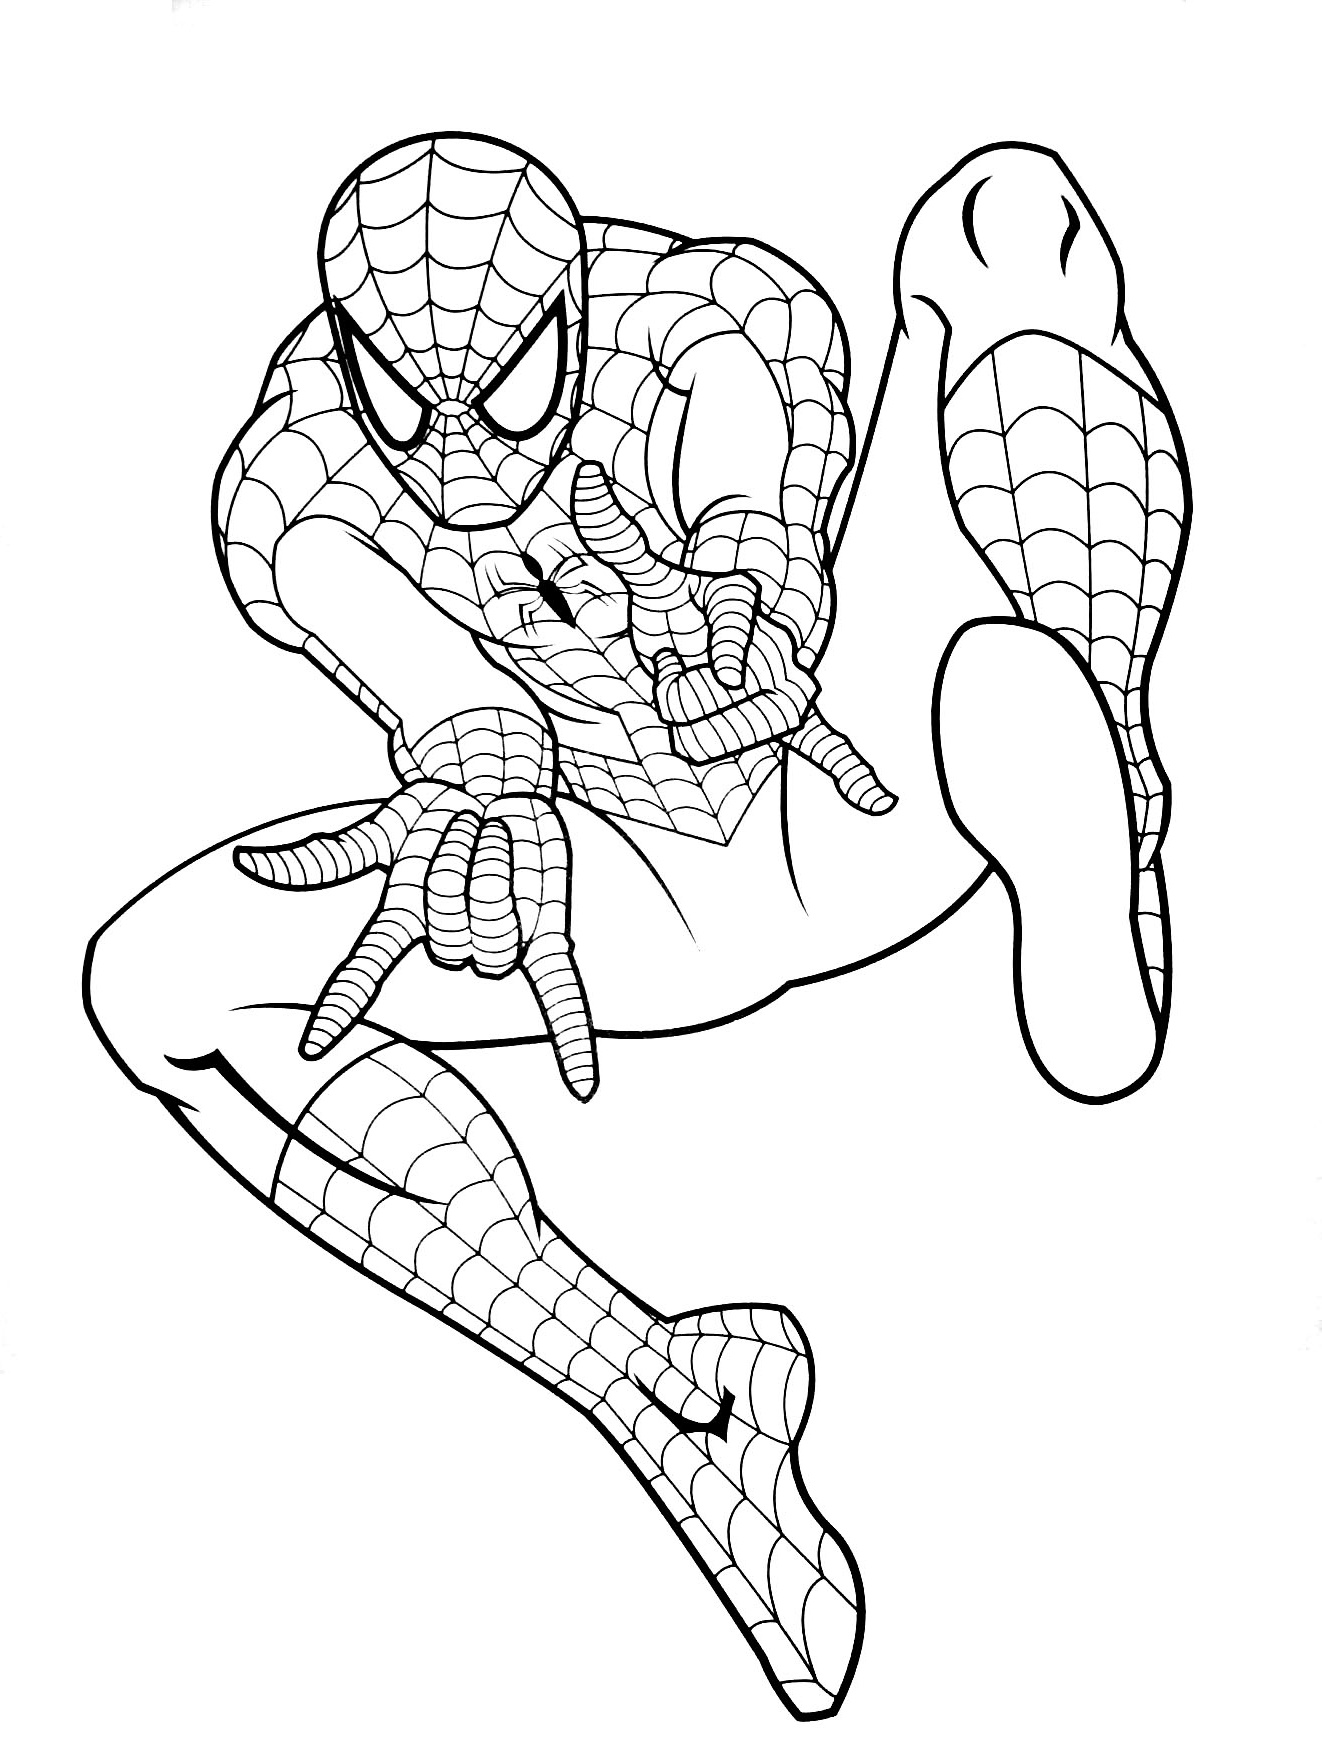 Coloriage De Spiderman à Imprimer Beau Stock Spiderman Gratuit 6 Coloriage Spiderman Coloriages